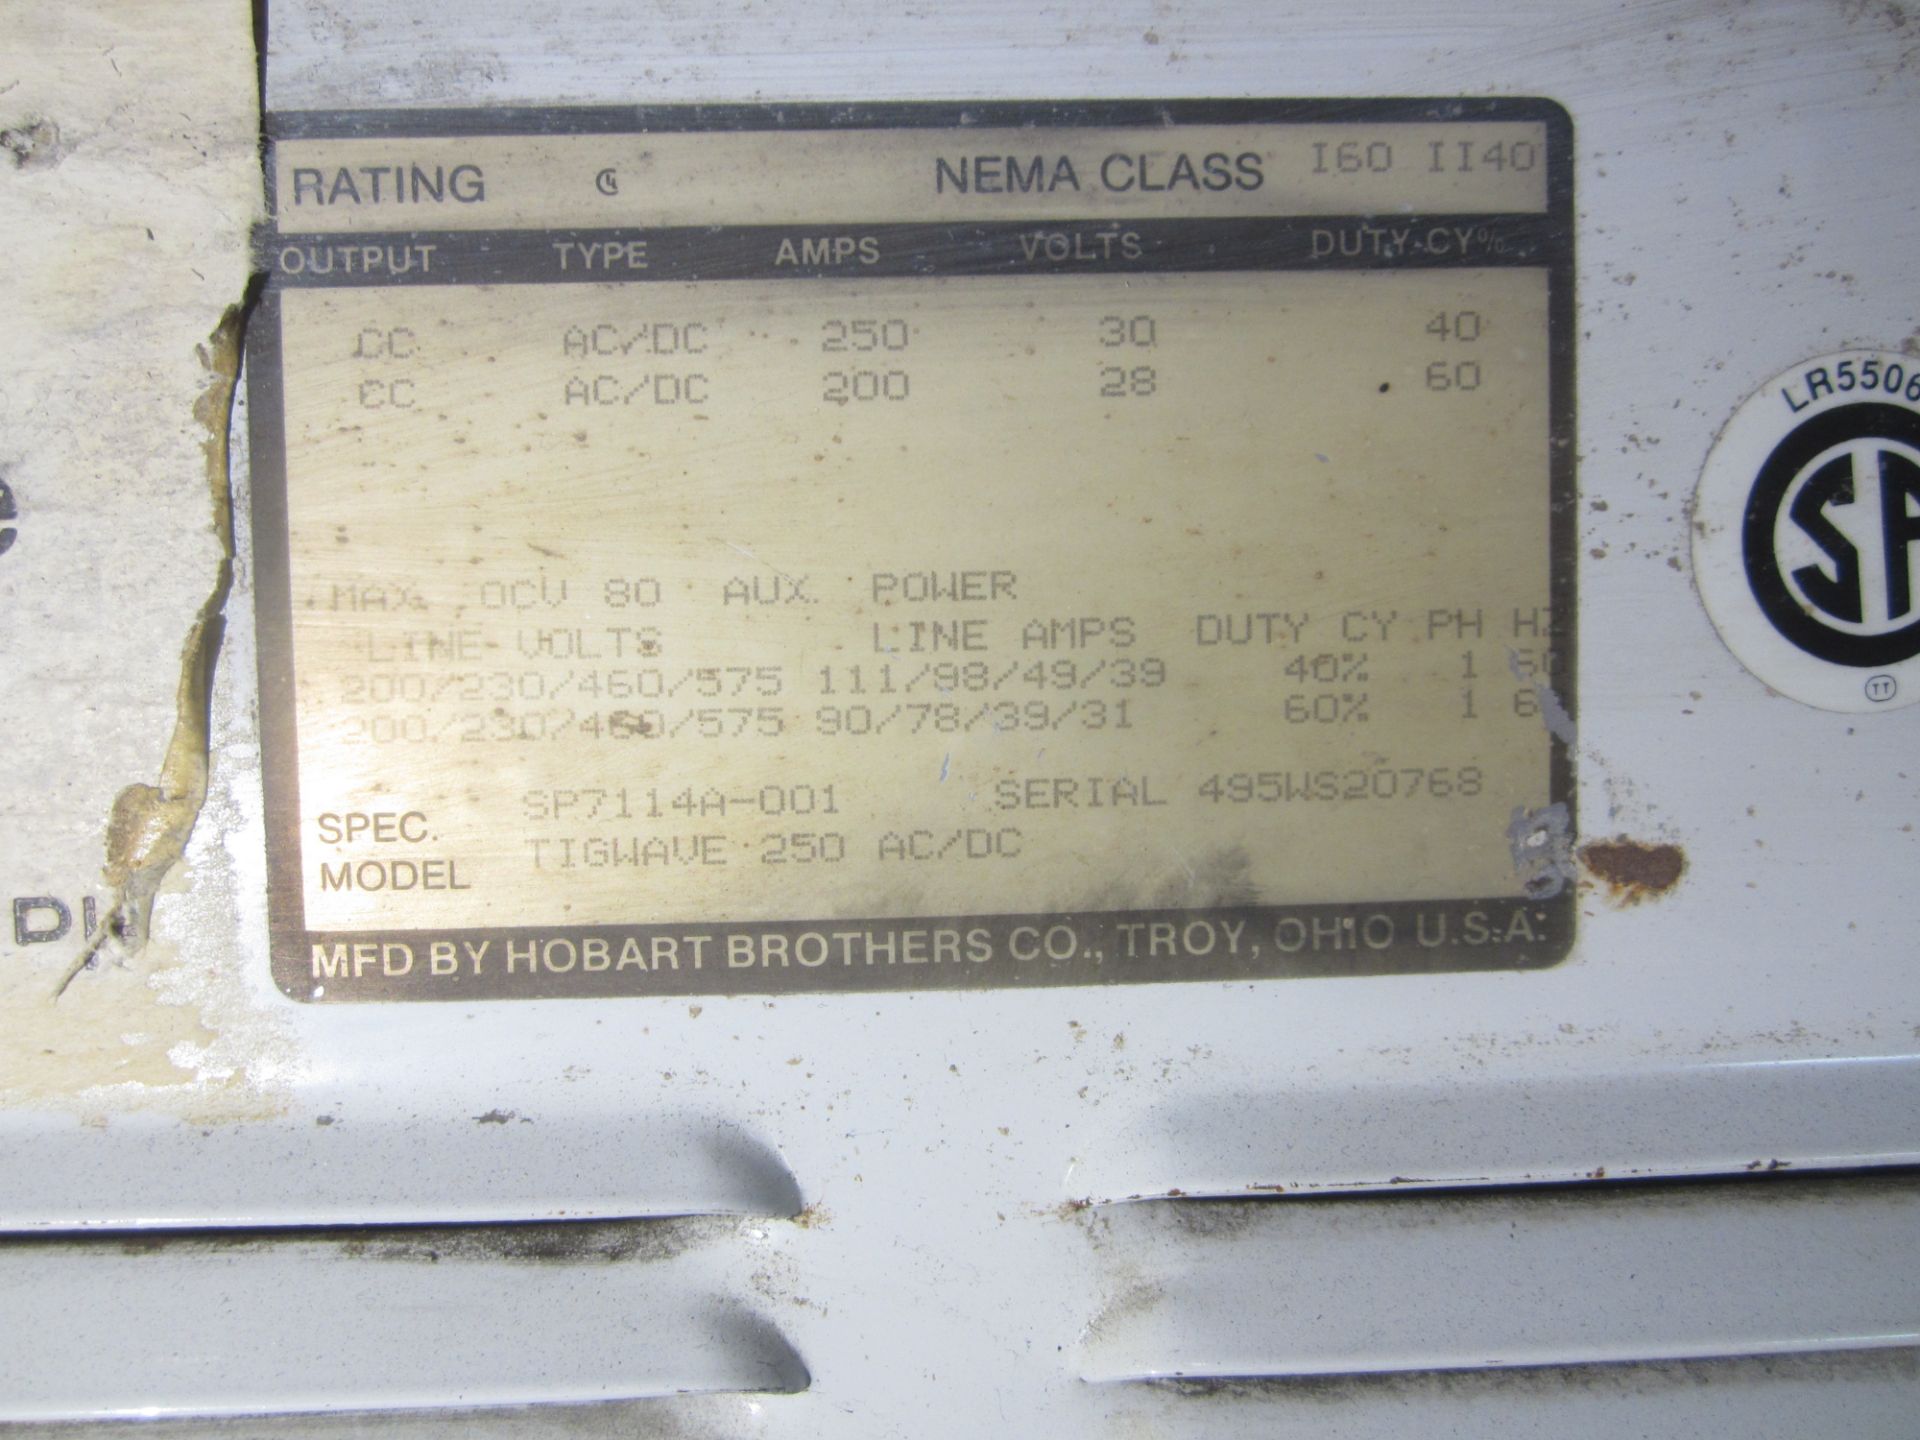 Hobart Tig Wave 250 AC/DC Tig Welder, s/n 495WS20768, 208/230/460/1/60 - Image 4 of 4